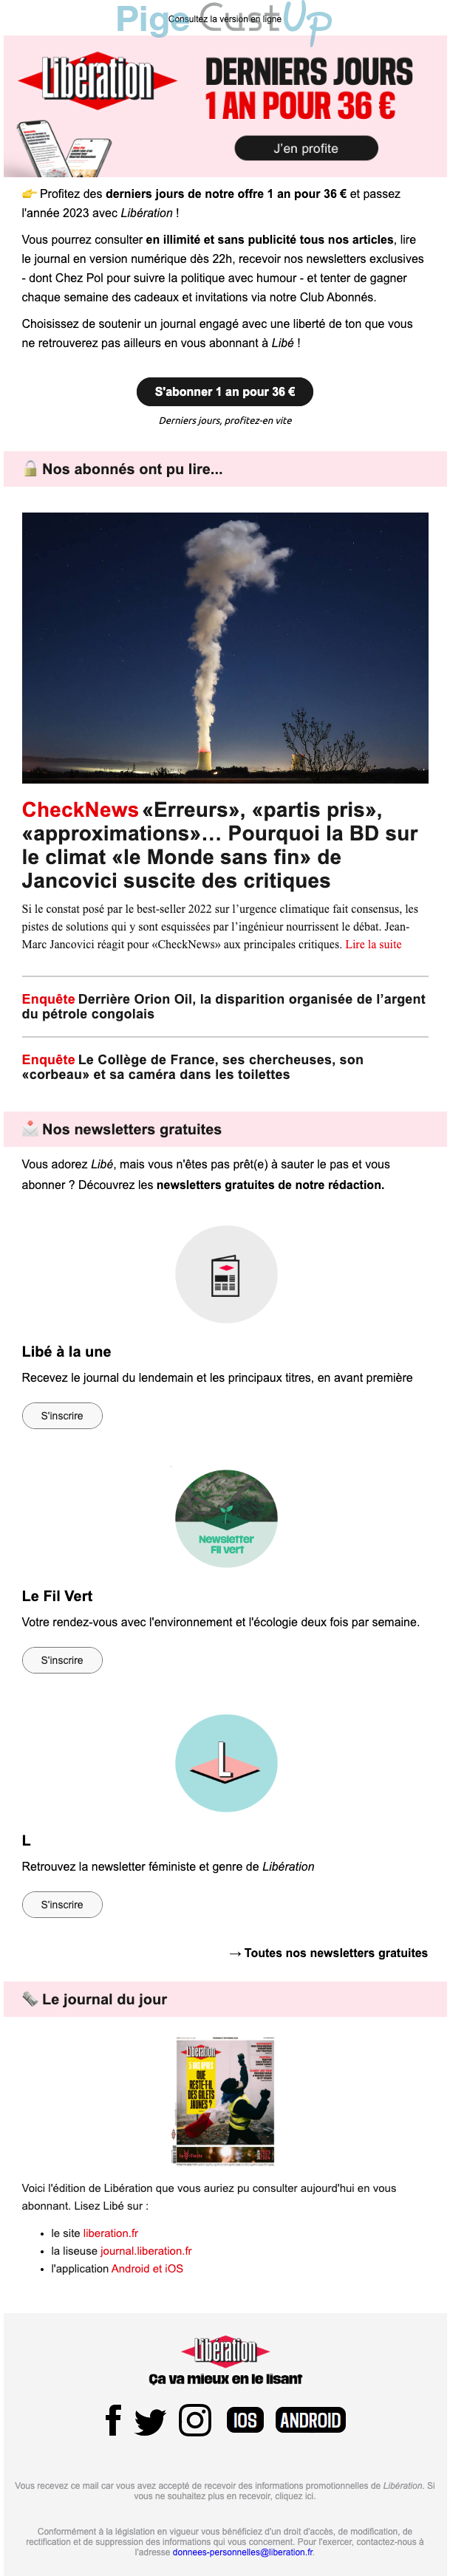 Exemple de Type de media  e-mailing - Libération - Marketing Acquisition - Acquisition abonnements - Derniers jours